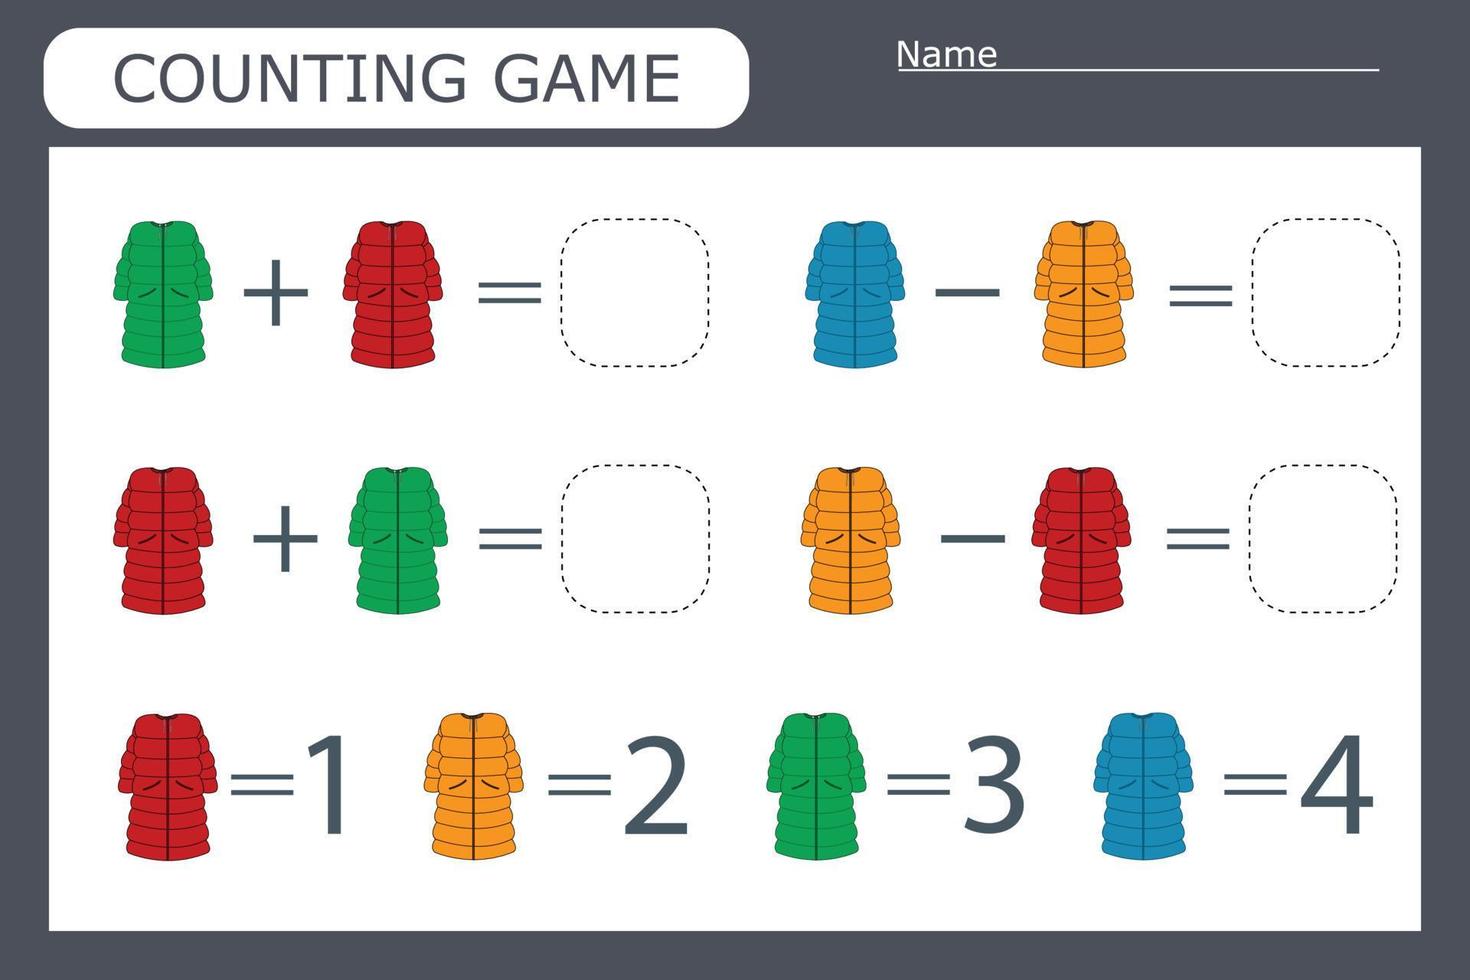 juego de conteo para niños en edad preescolar. resuelve el acertijo con la ayuda de la ropa de los niños y resuelve los ejemplos vector